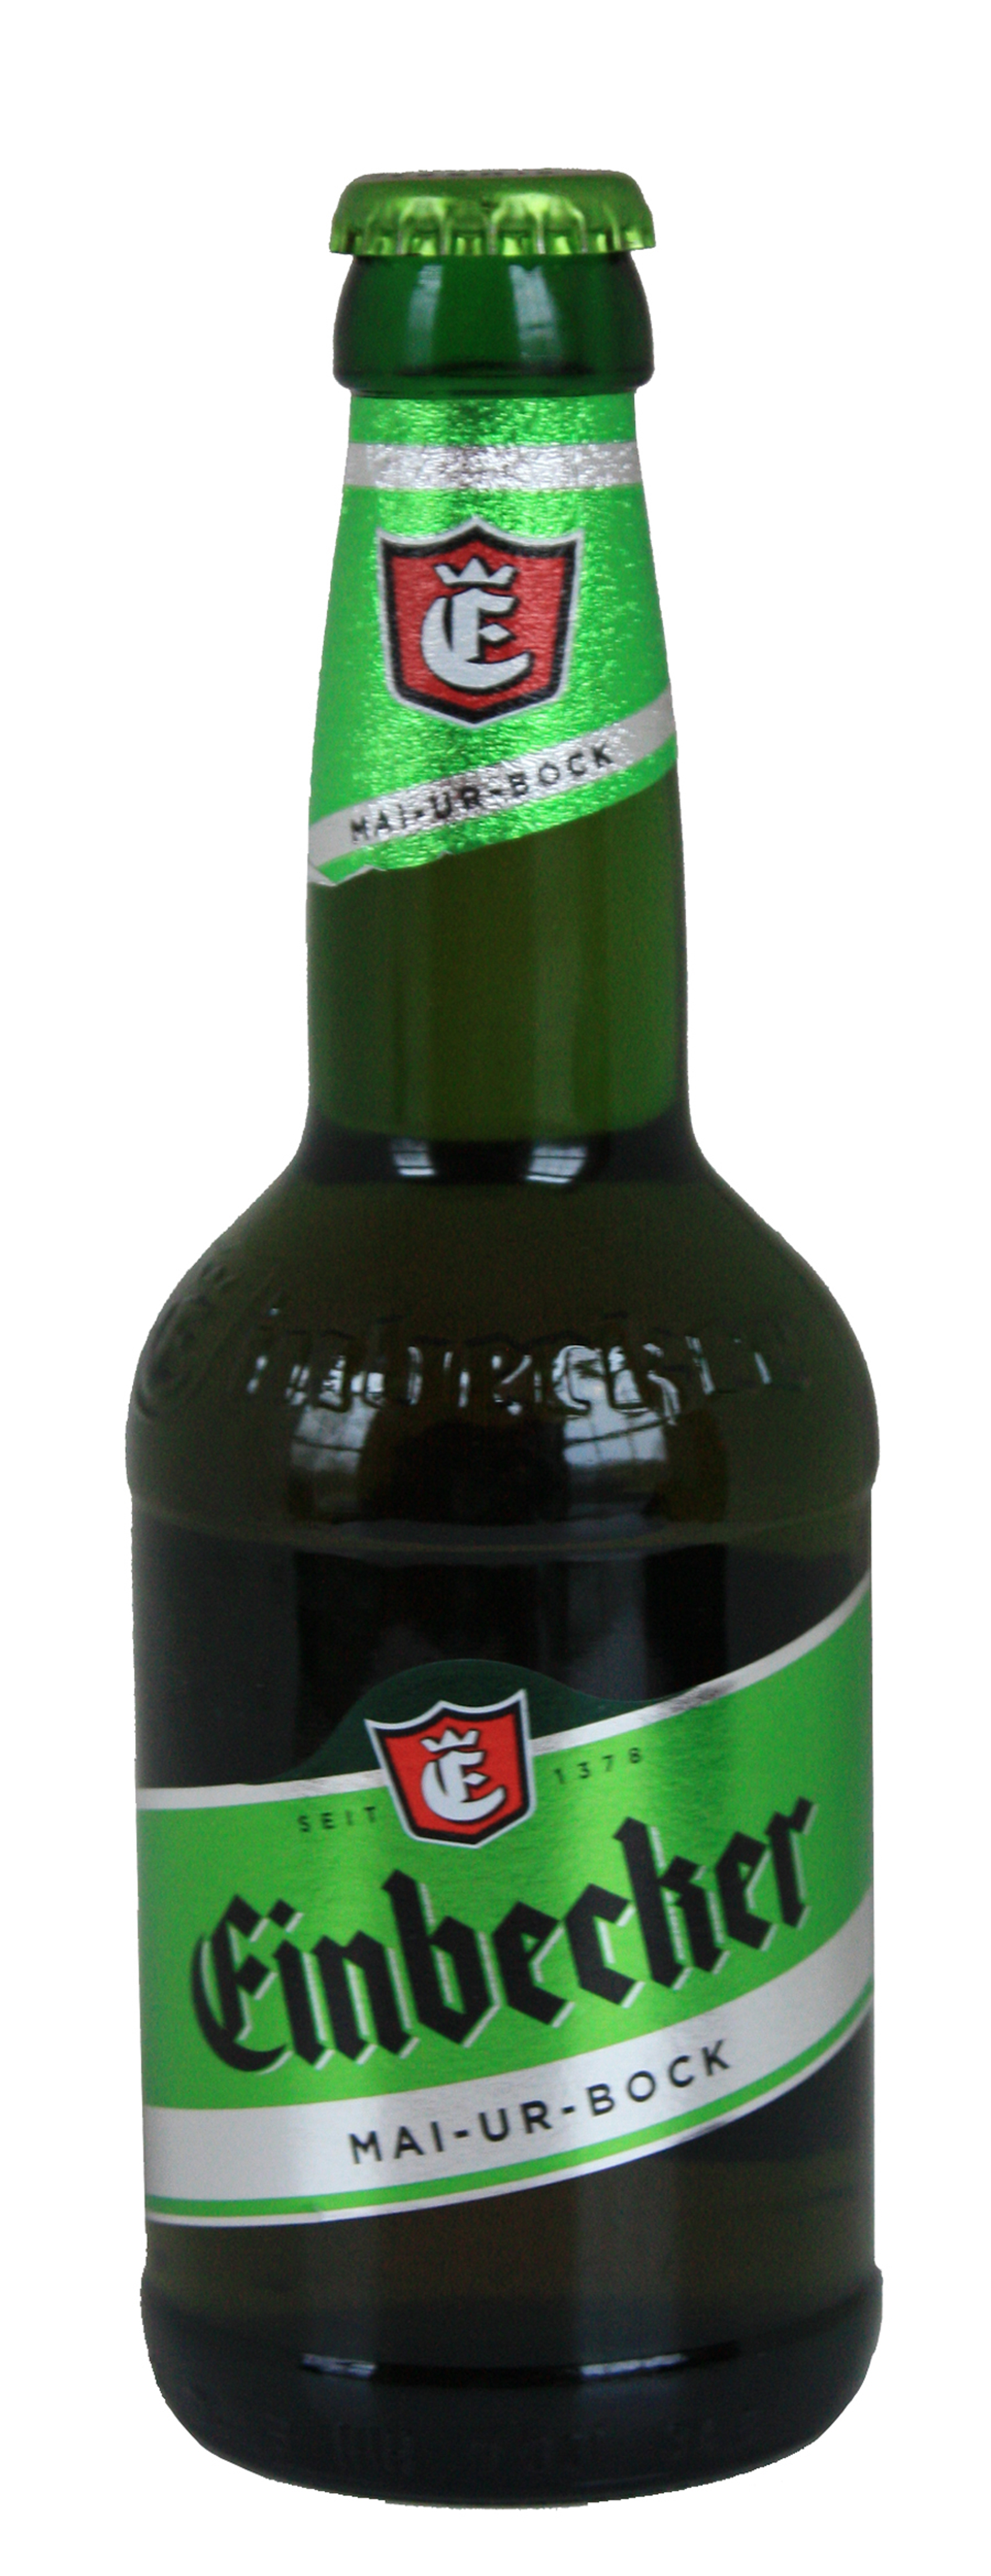 Einbecker Mai-Ur-Bock 11.2oz bottle.